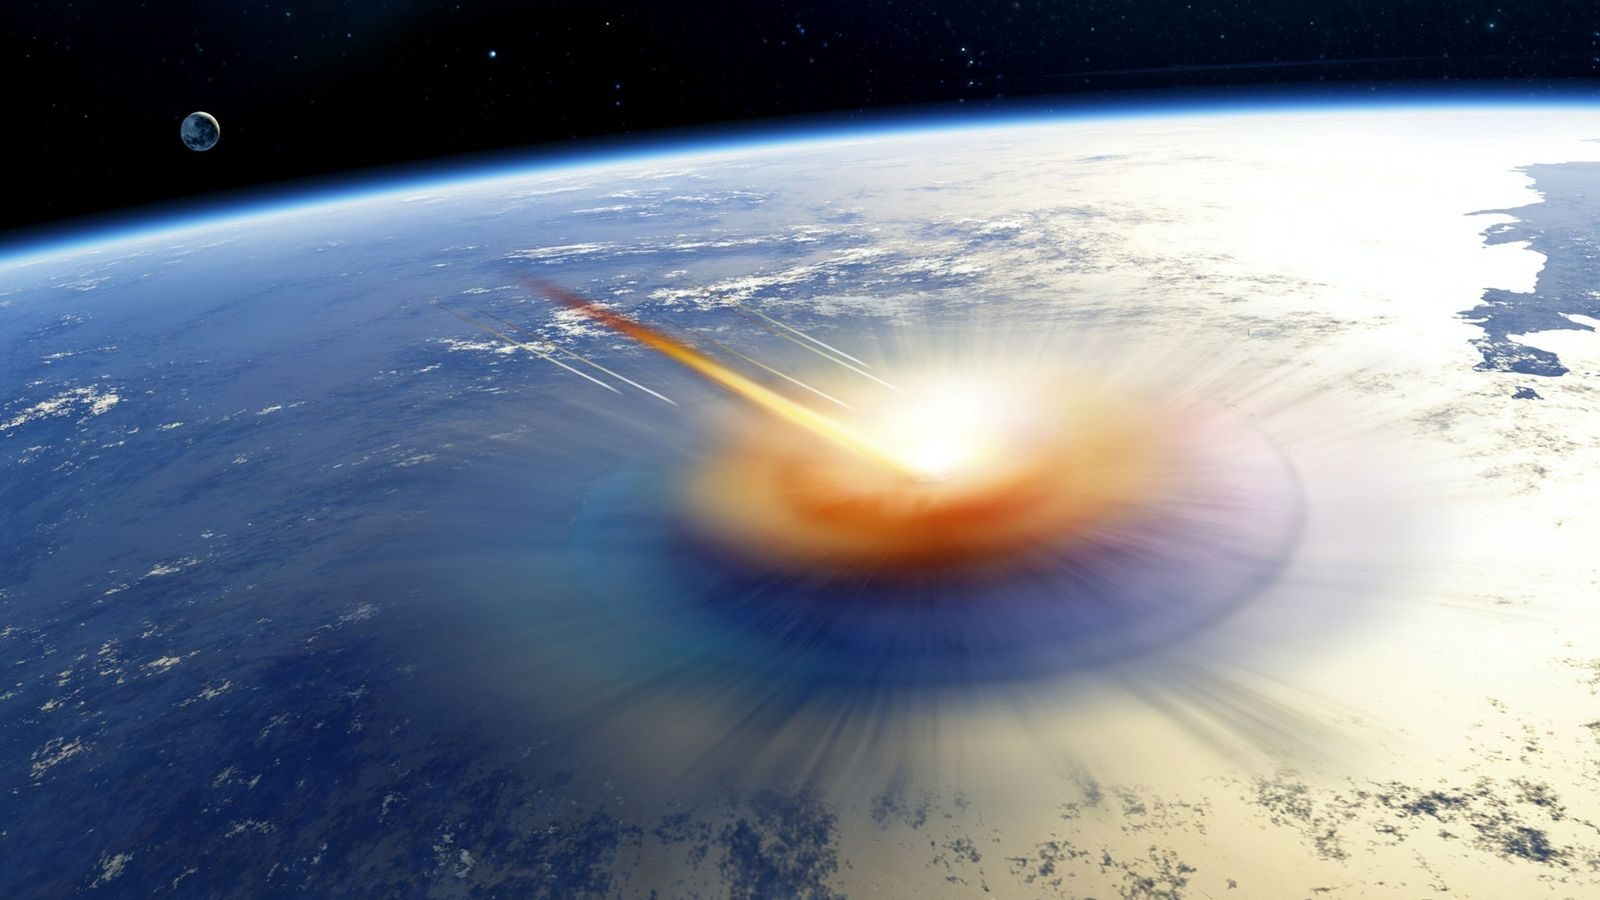 Un astéroïde s'écrasant sur Terre, vue d'artiste © DETLEV VAN RAVENSWAAY